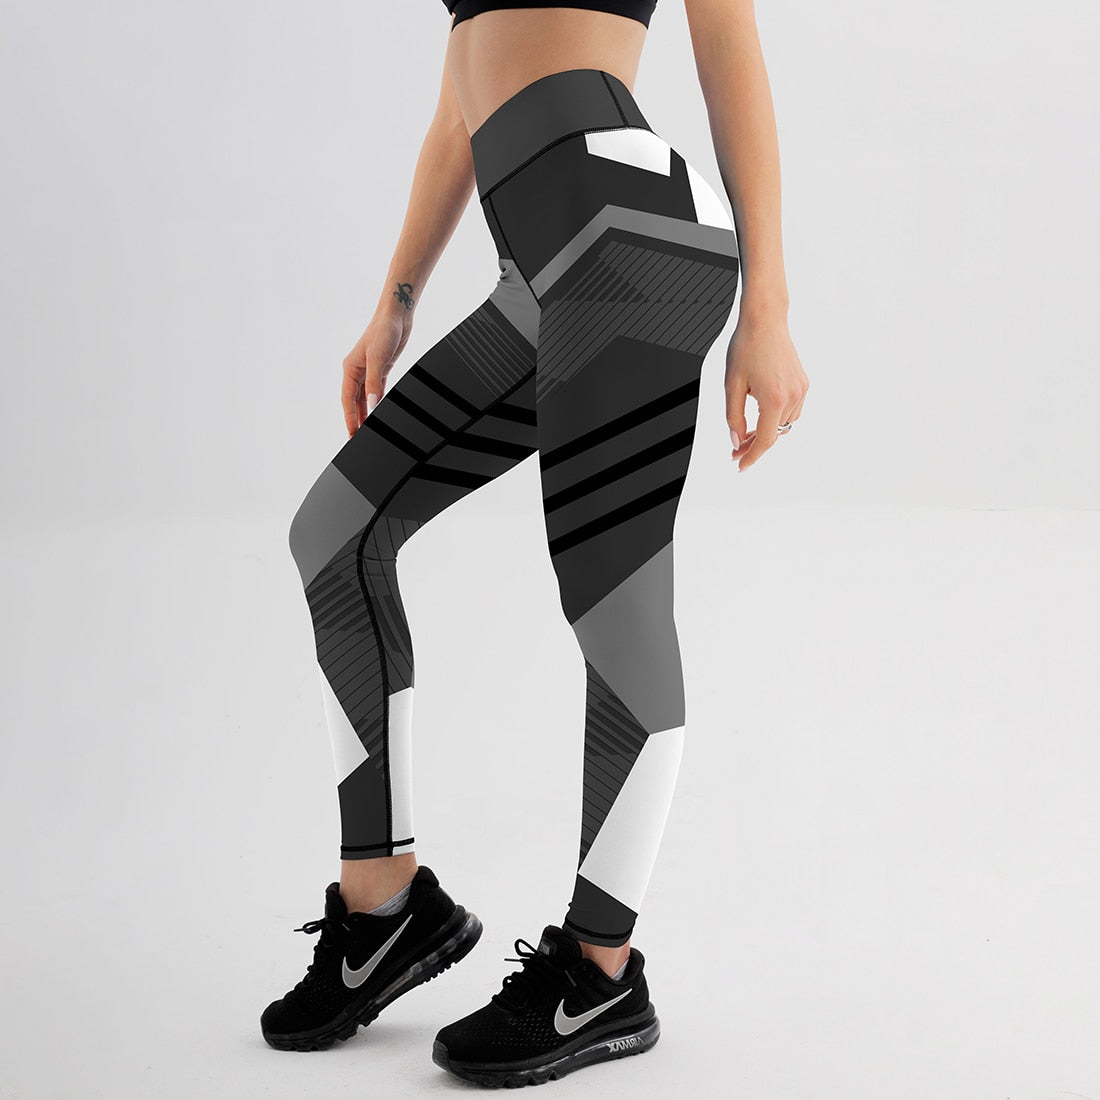 Mesh Pattern Print Leggings fitness Leggings For Women Sporting Workout Leggins Elastic Slim Black White Pants Trousers Fitness